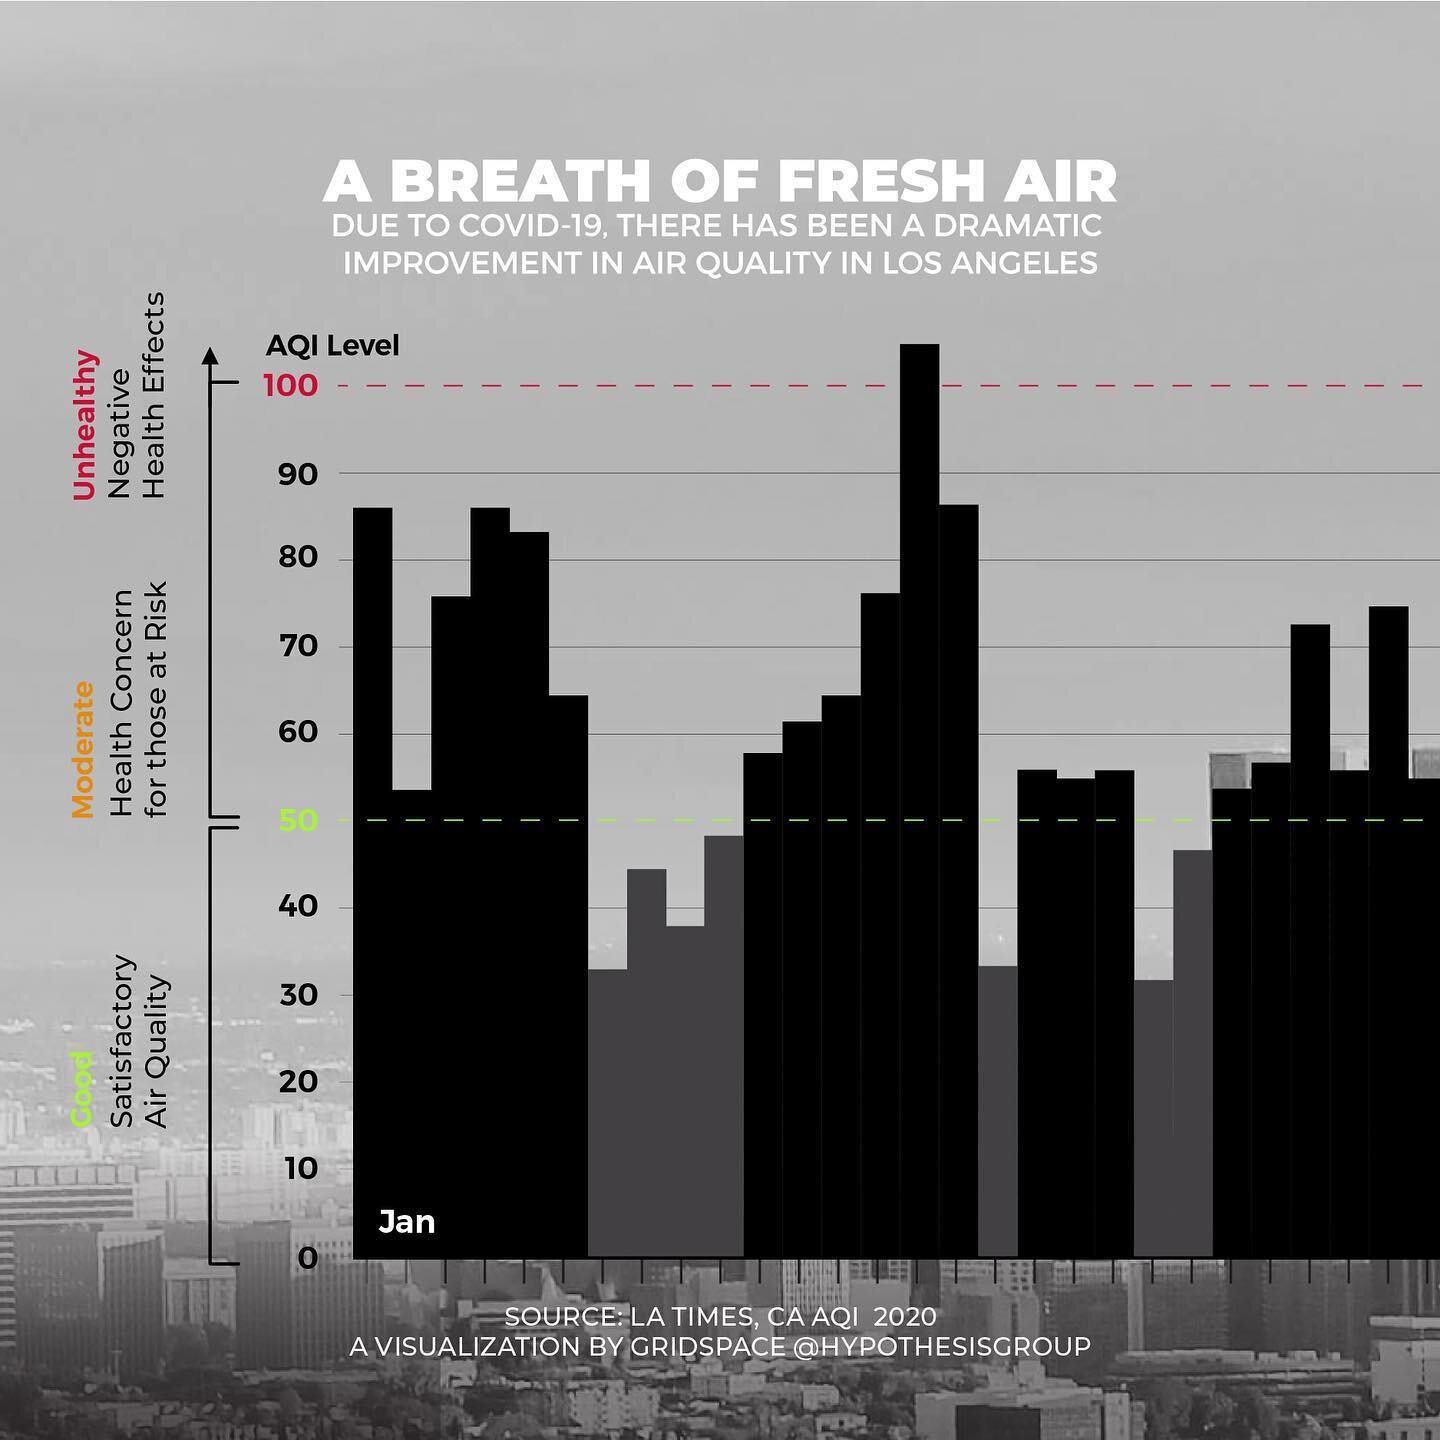 汽车交通的减少和春季多雨的天气使洛杉矶的空气污染显著减少，空气更清新，视野更清晰。#数据可视化#infobite #dataviz #冠状病毒#covid19 #洛杉矶#清洁空气#inf